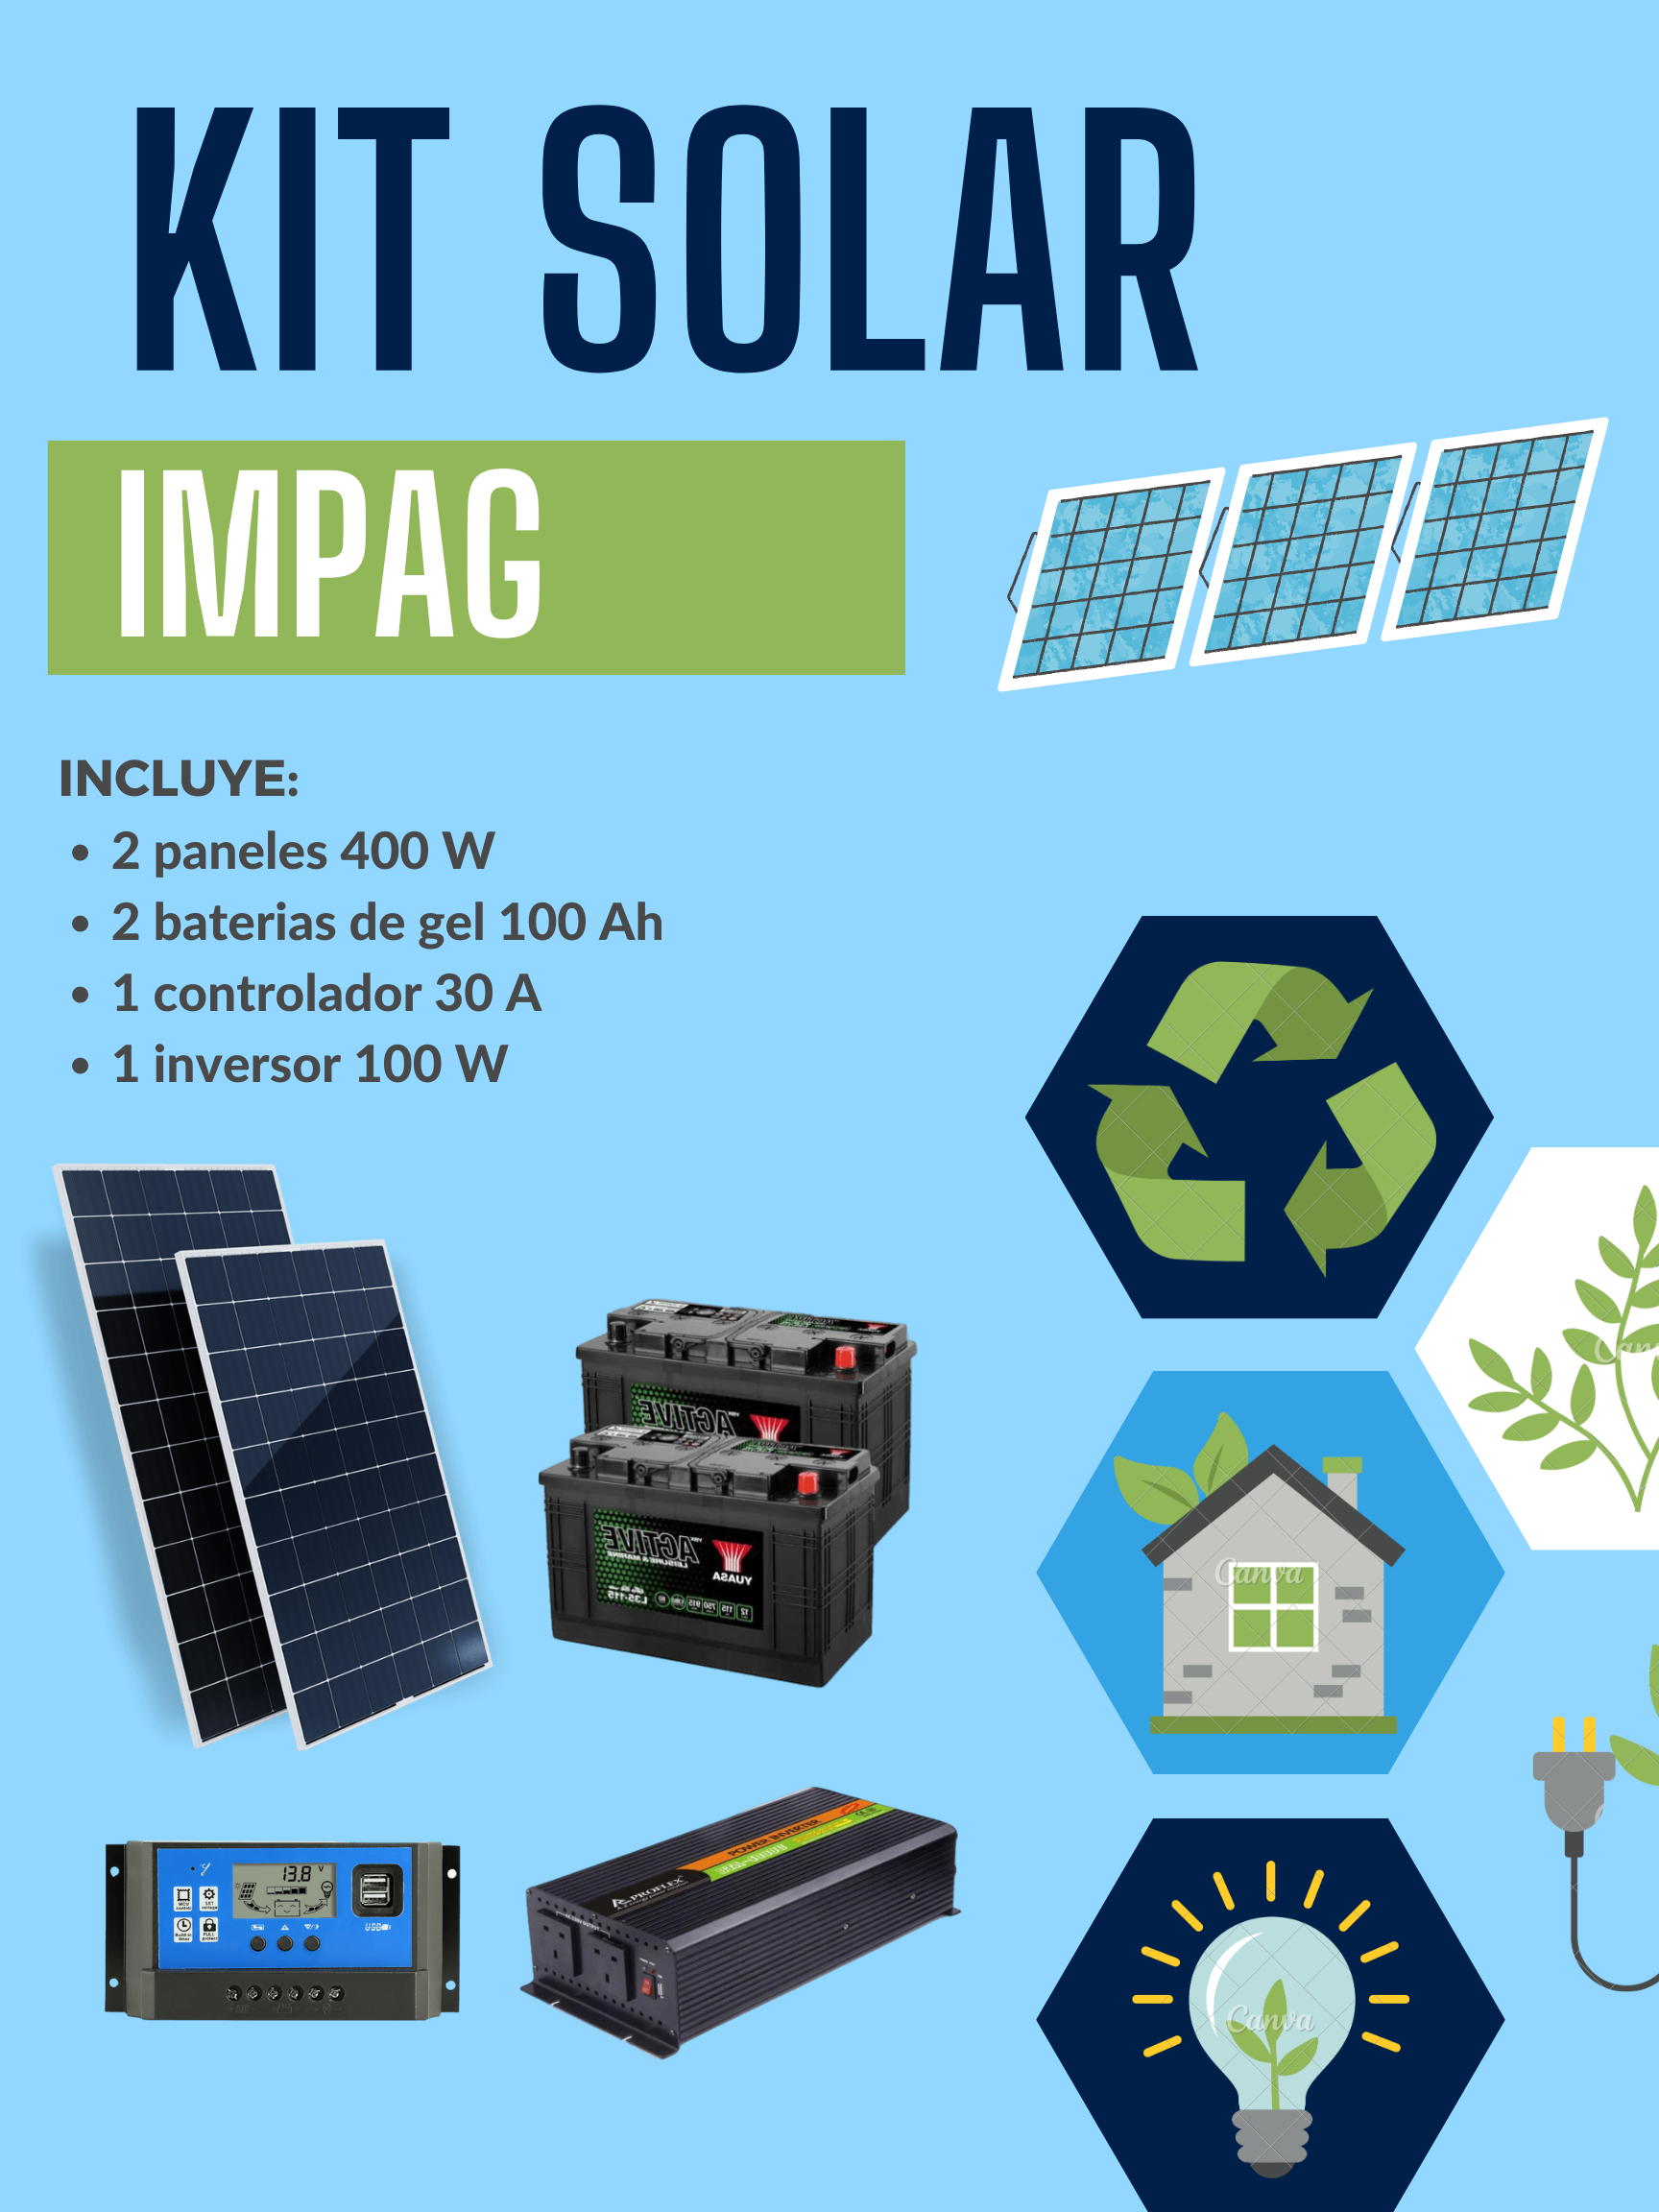 KIT SOLAR AISLADA 1500 W Energía solar para lugares aislados de la red.